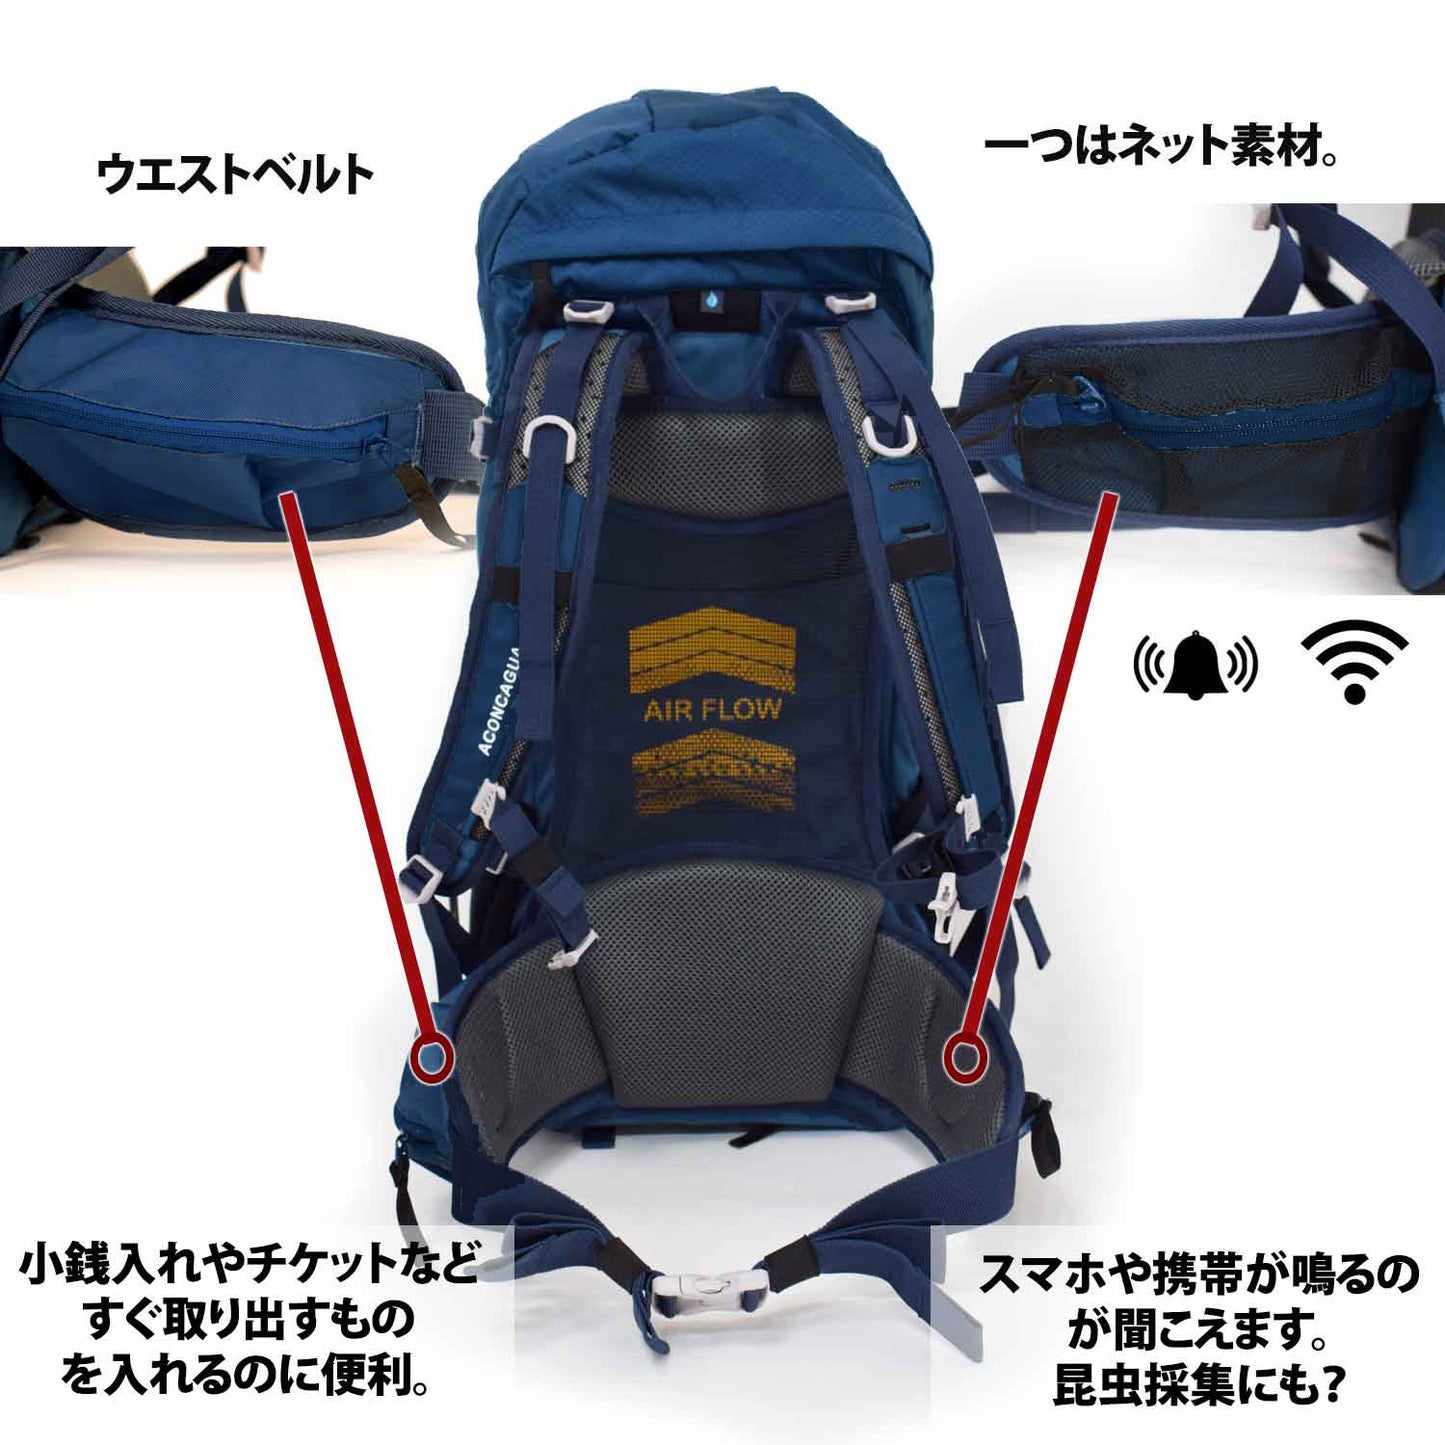 【セット】コルドバ 35Lとトレッキングポールのセット 富士登山 山登り Cordoba set